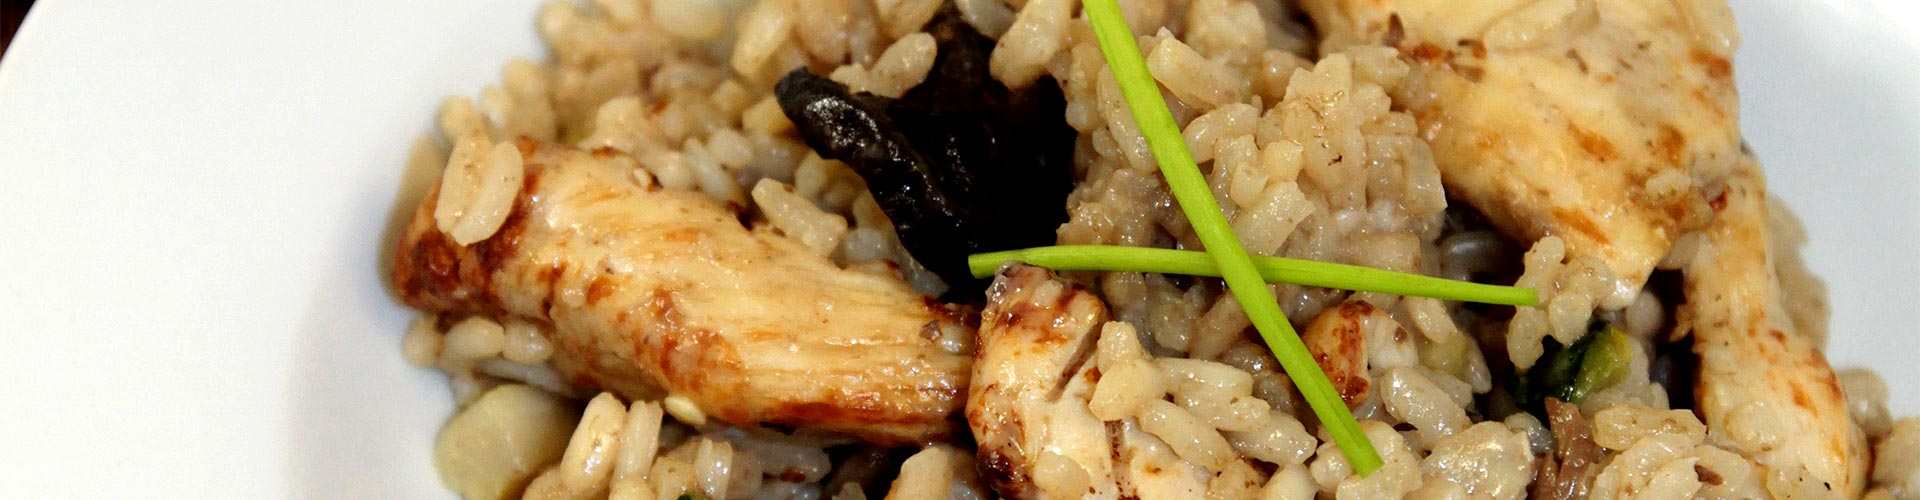 ¿Dónde comer risotto en Fuenlabrada?